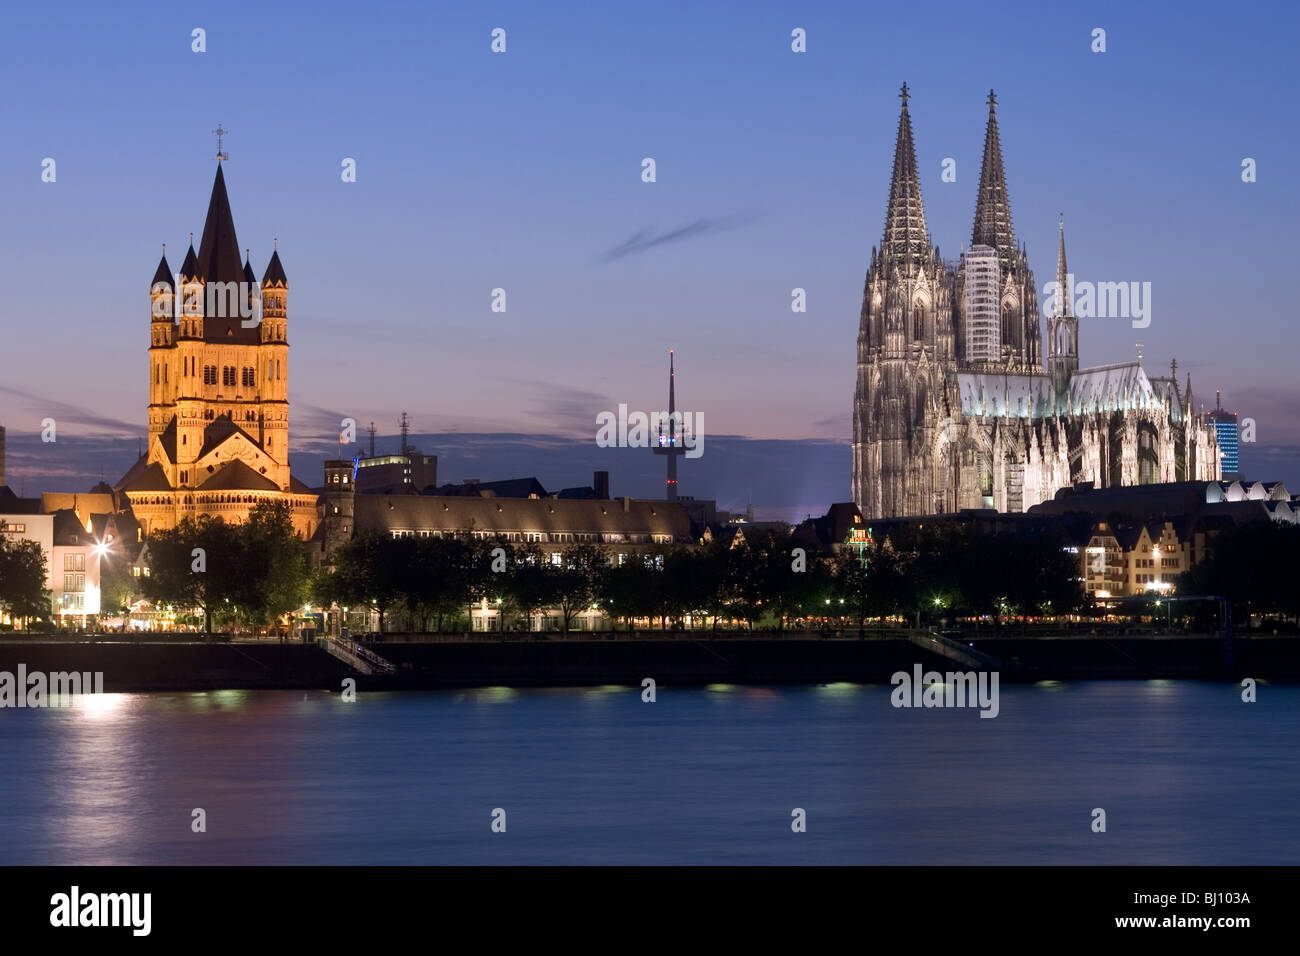 La Catedral de Colonia y la iglesia de San Martín bruto en la noche, Alemania Foto de stock